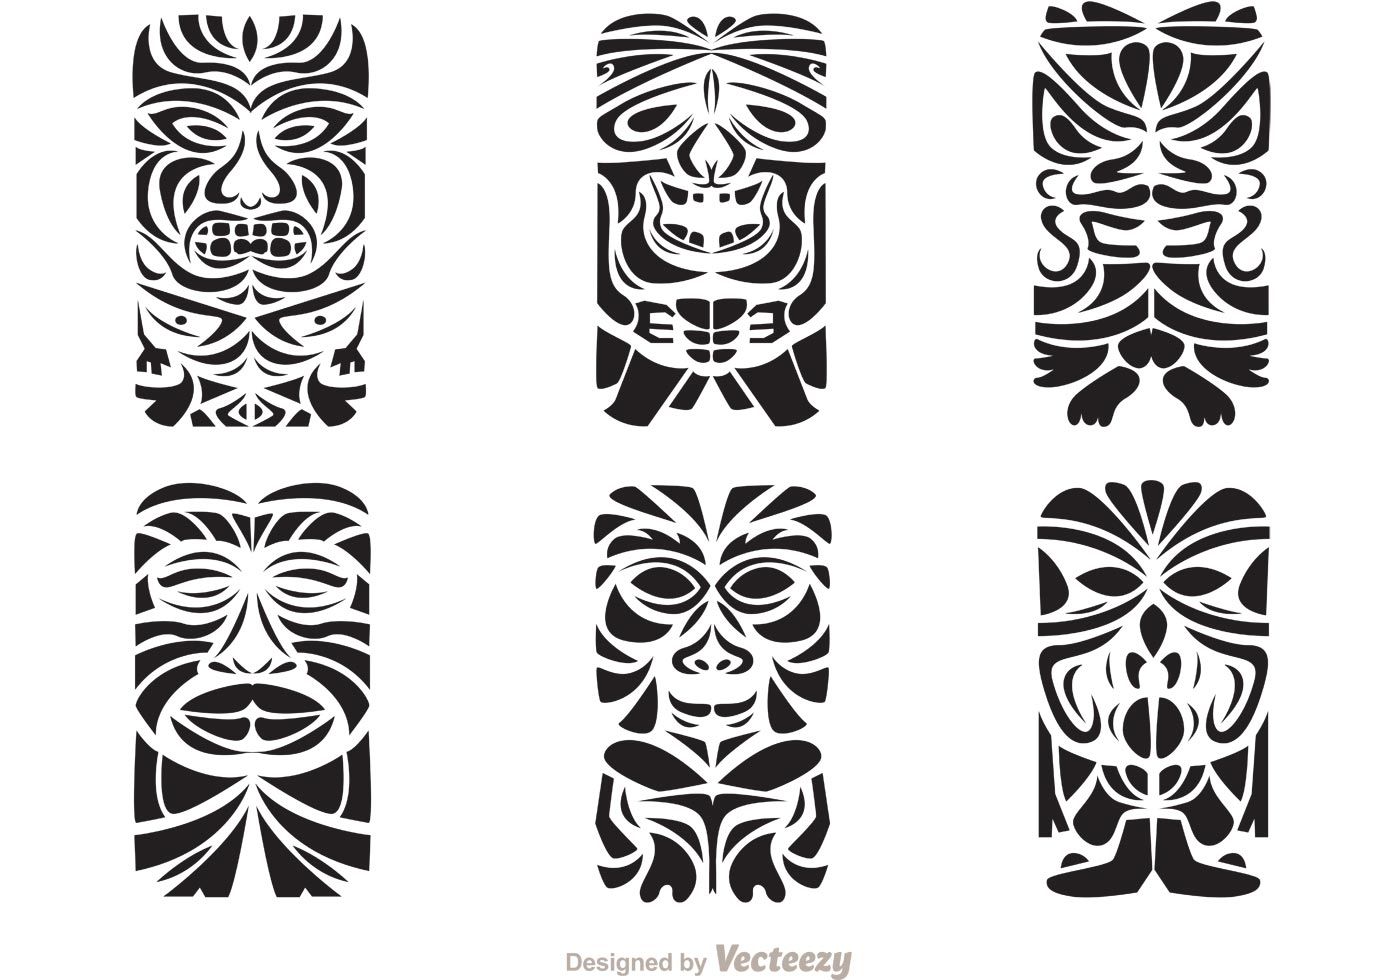 Tiki God Totem 2 Tattoo Die-cut Vinyl Decal / Sticker ** 4 Sizes **